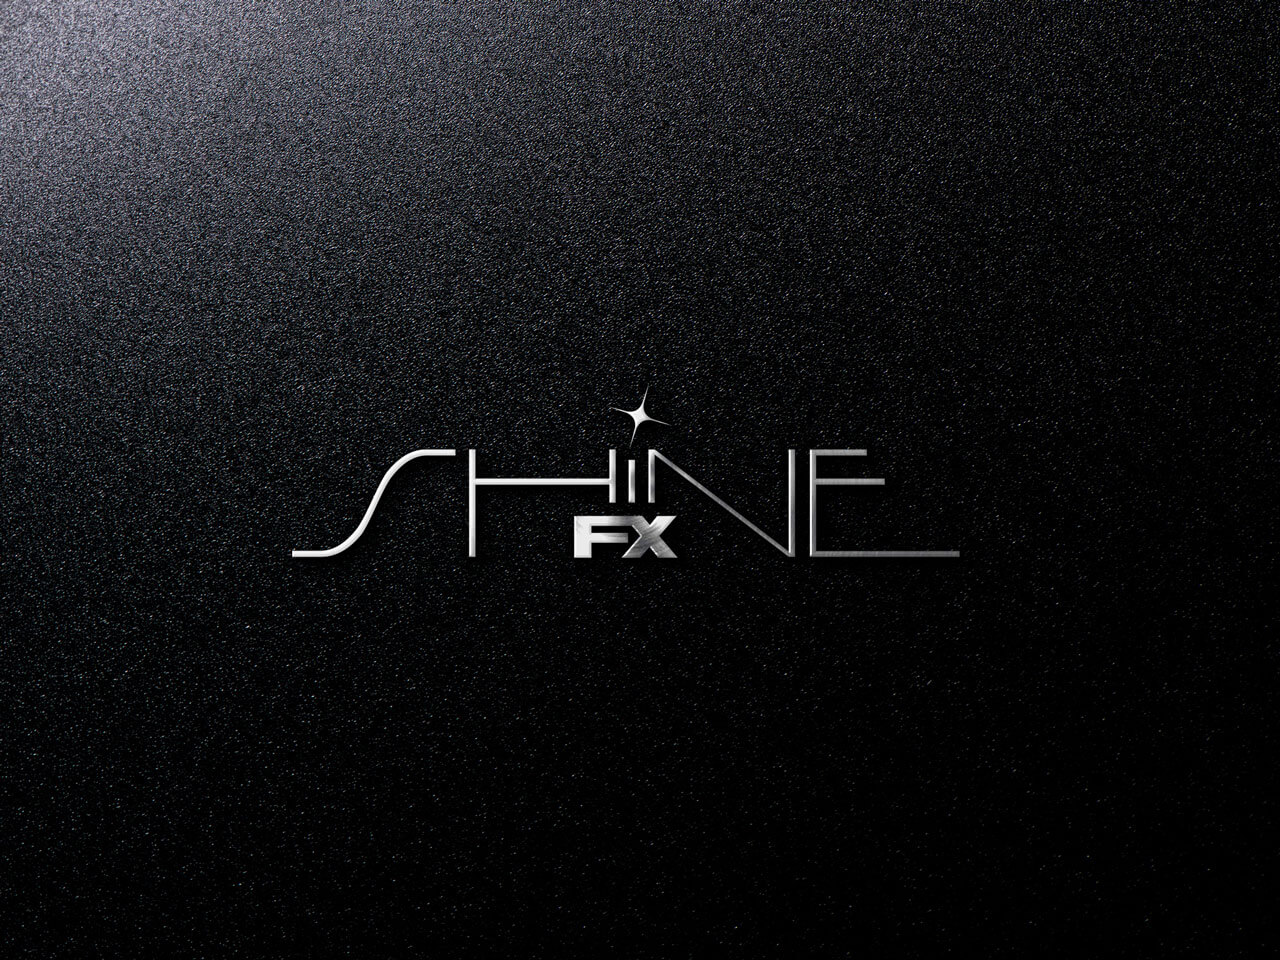 Logo Shine FX